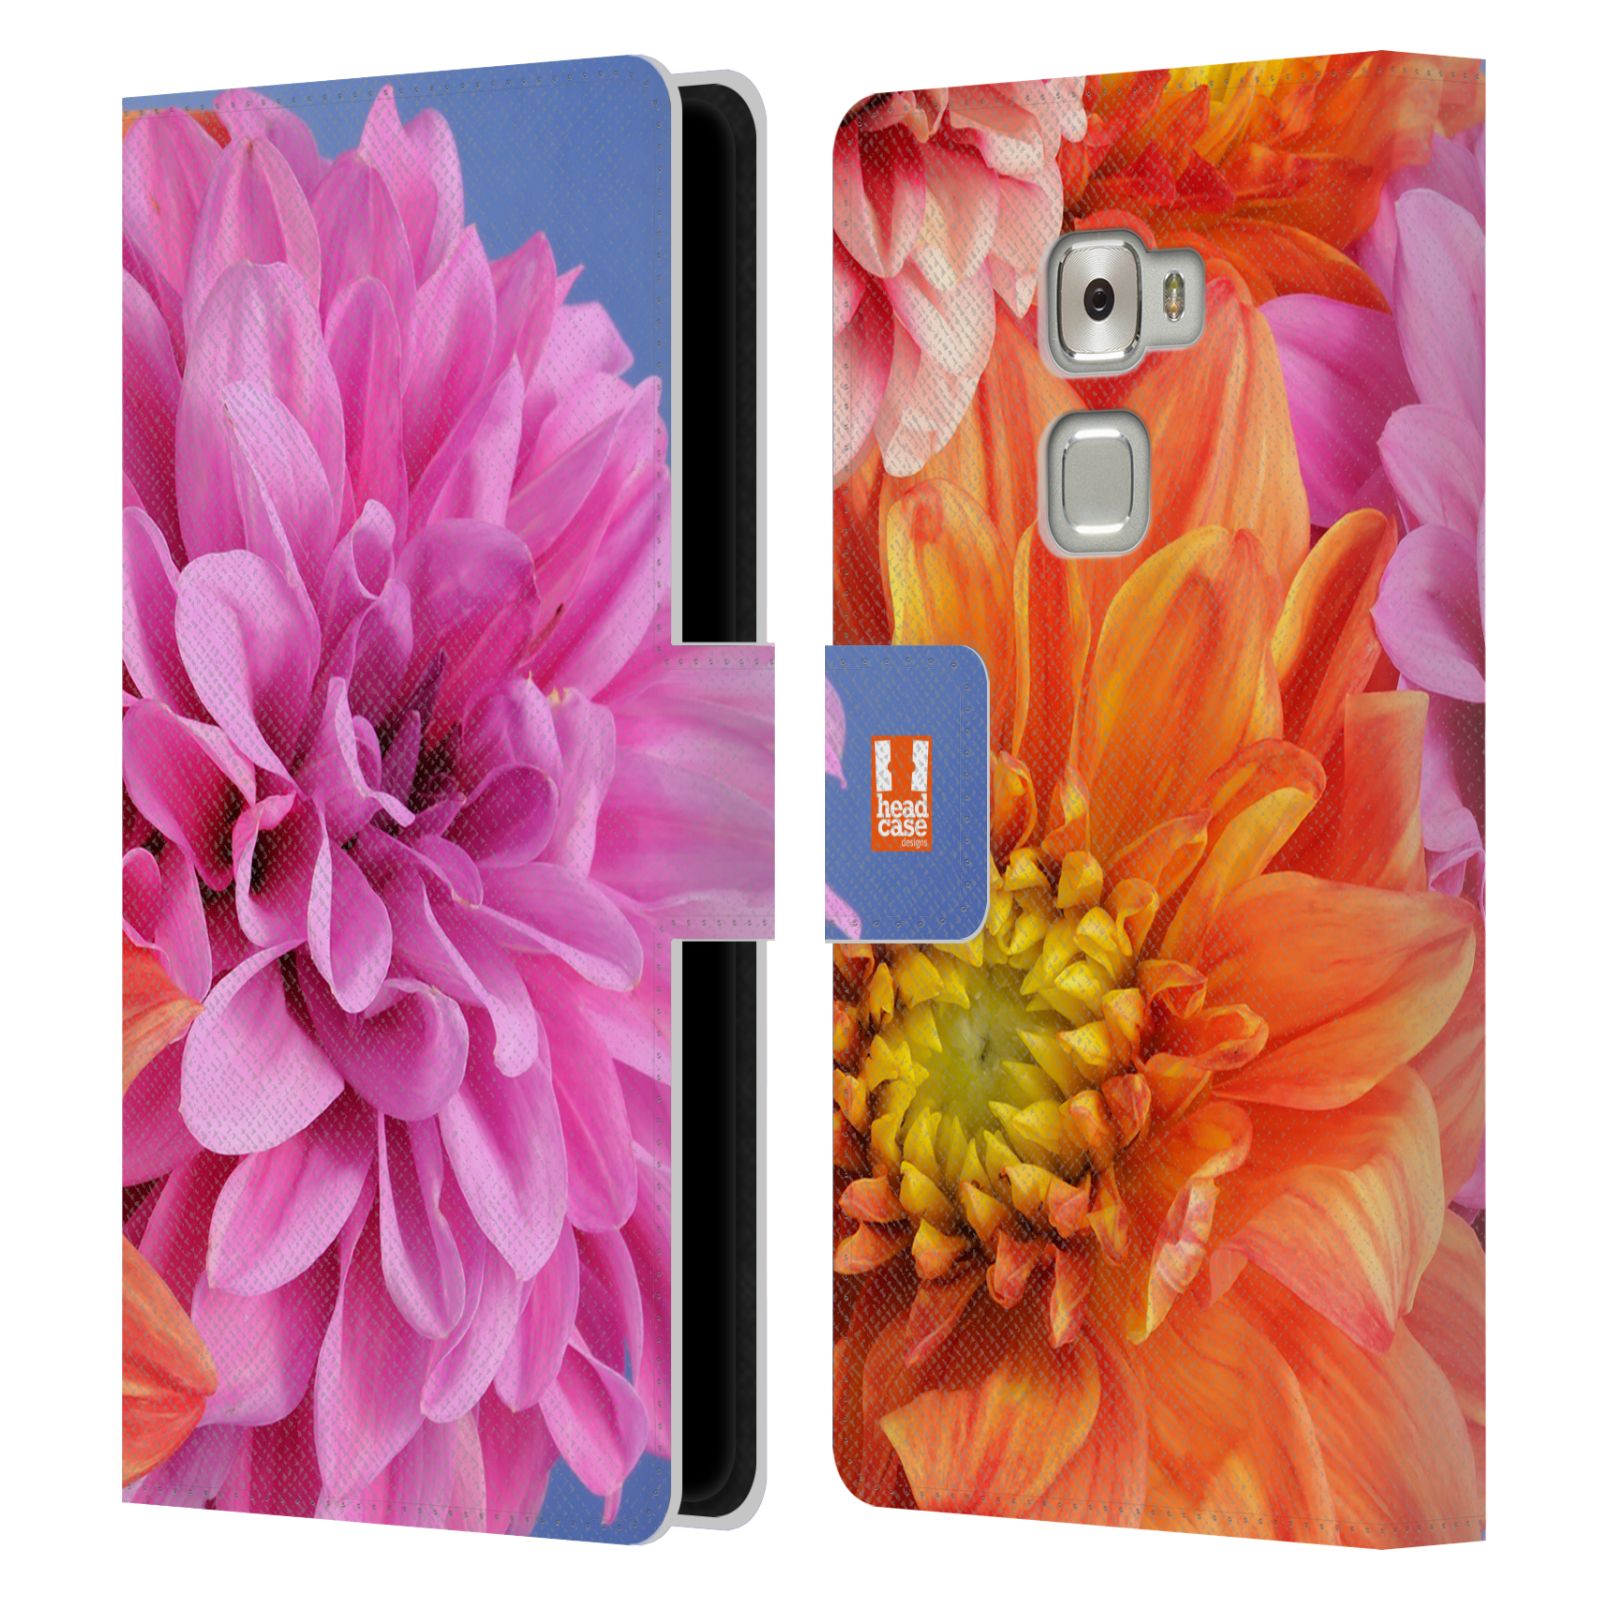 HEAD CASE Flipové pouzdro pro mobil Huawei MATE S květy foto Jiřinka růžová a oranžová